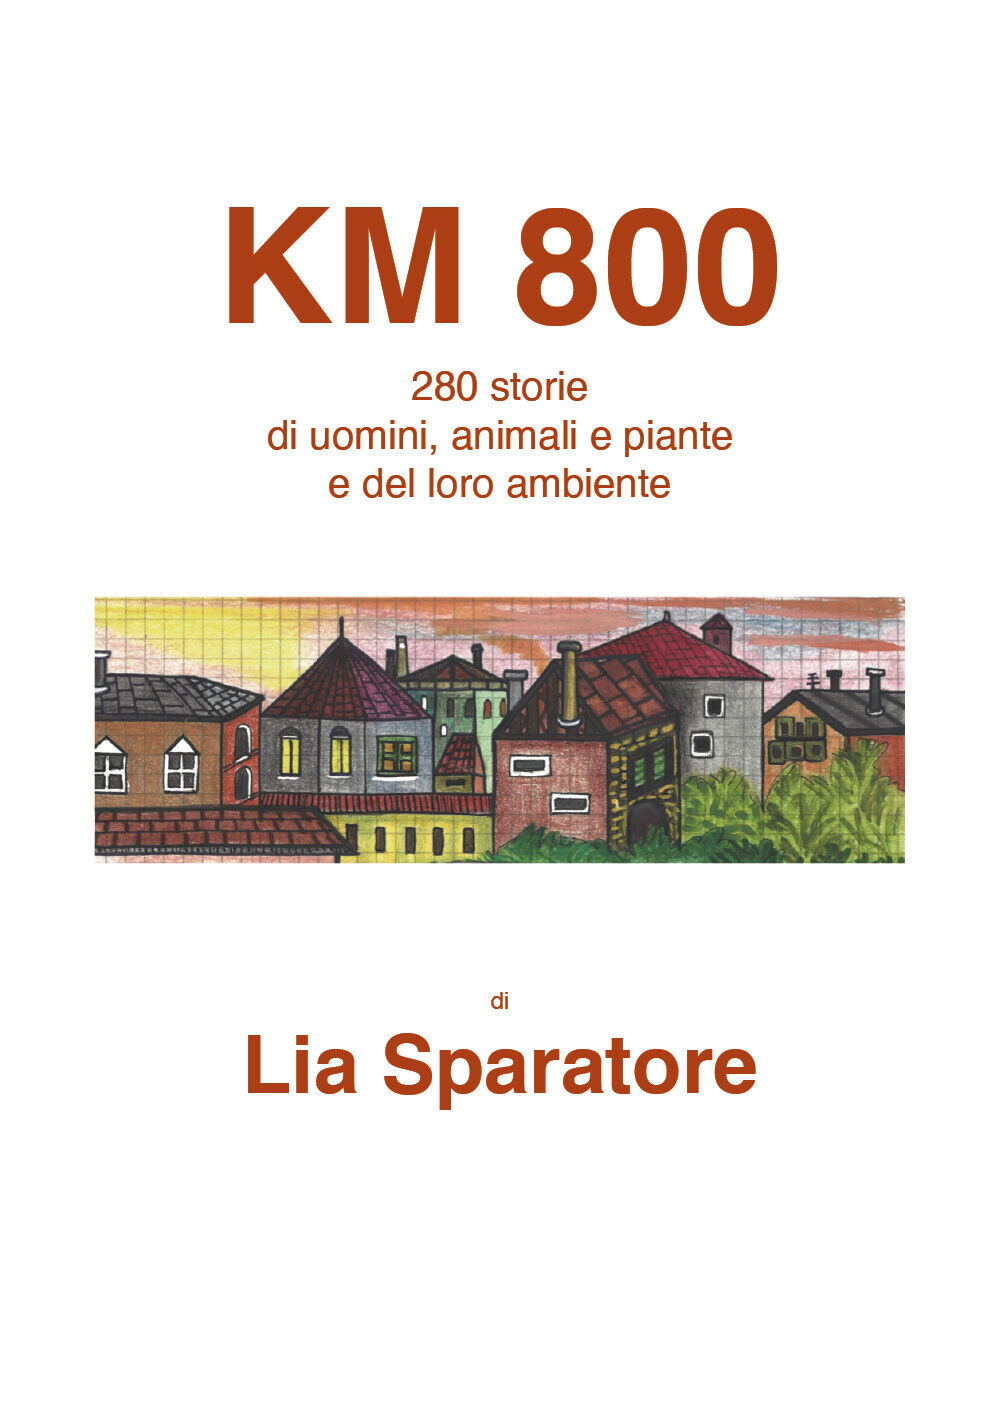 Km 800. 280 storie di uomini, animali e piante e del loro ambiente di Lia Sparat